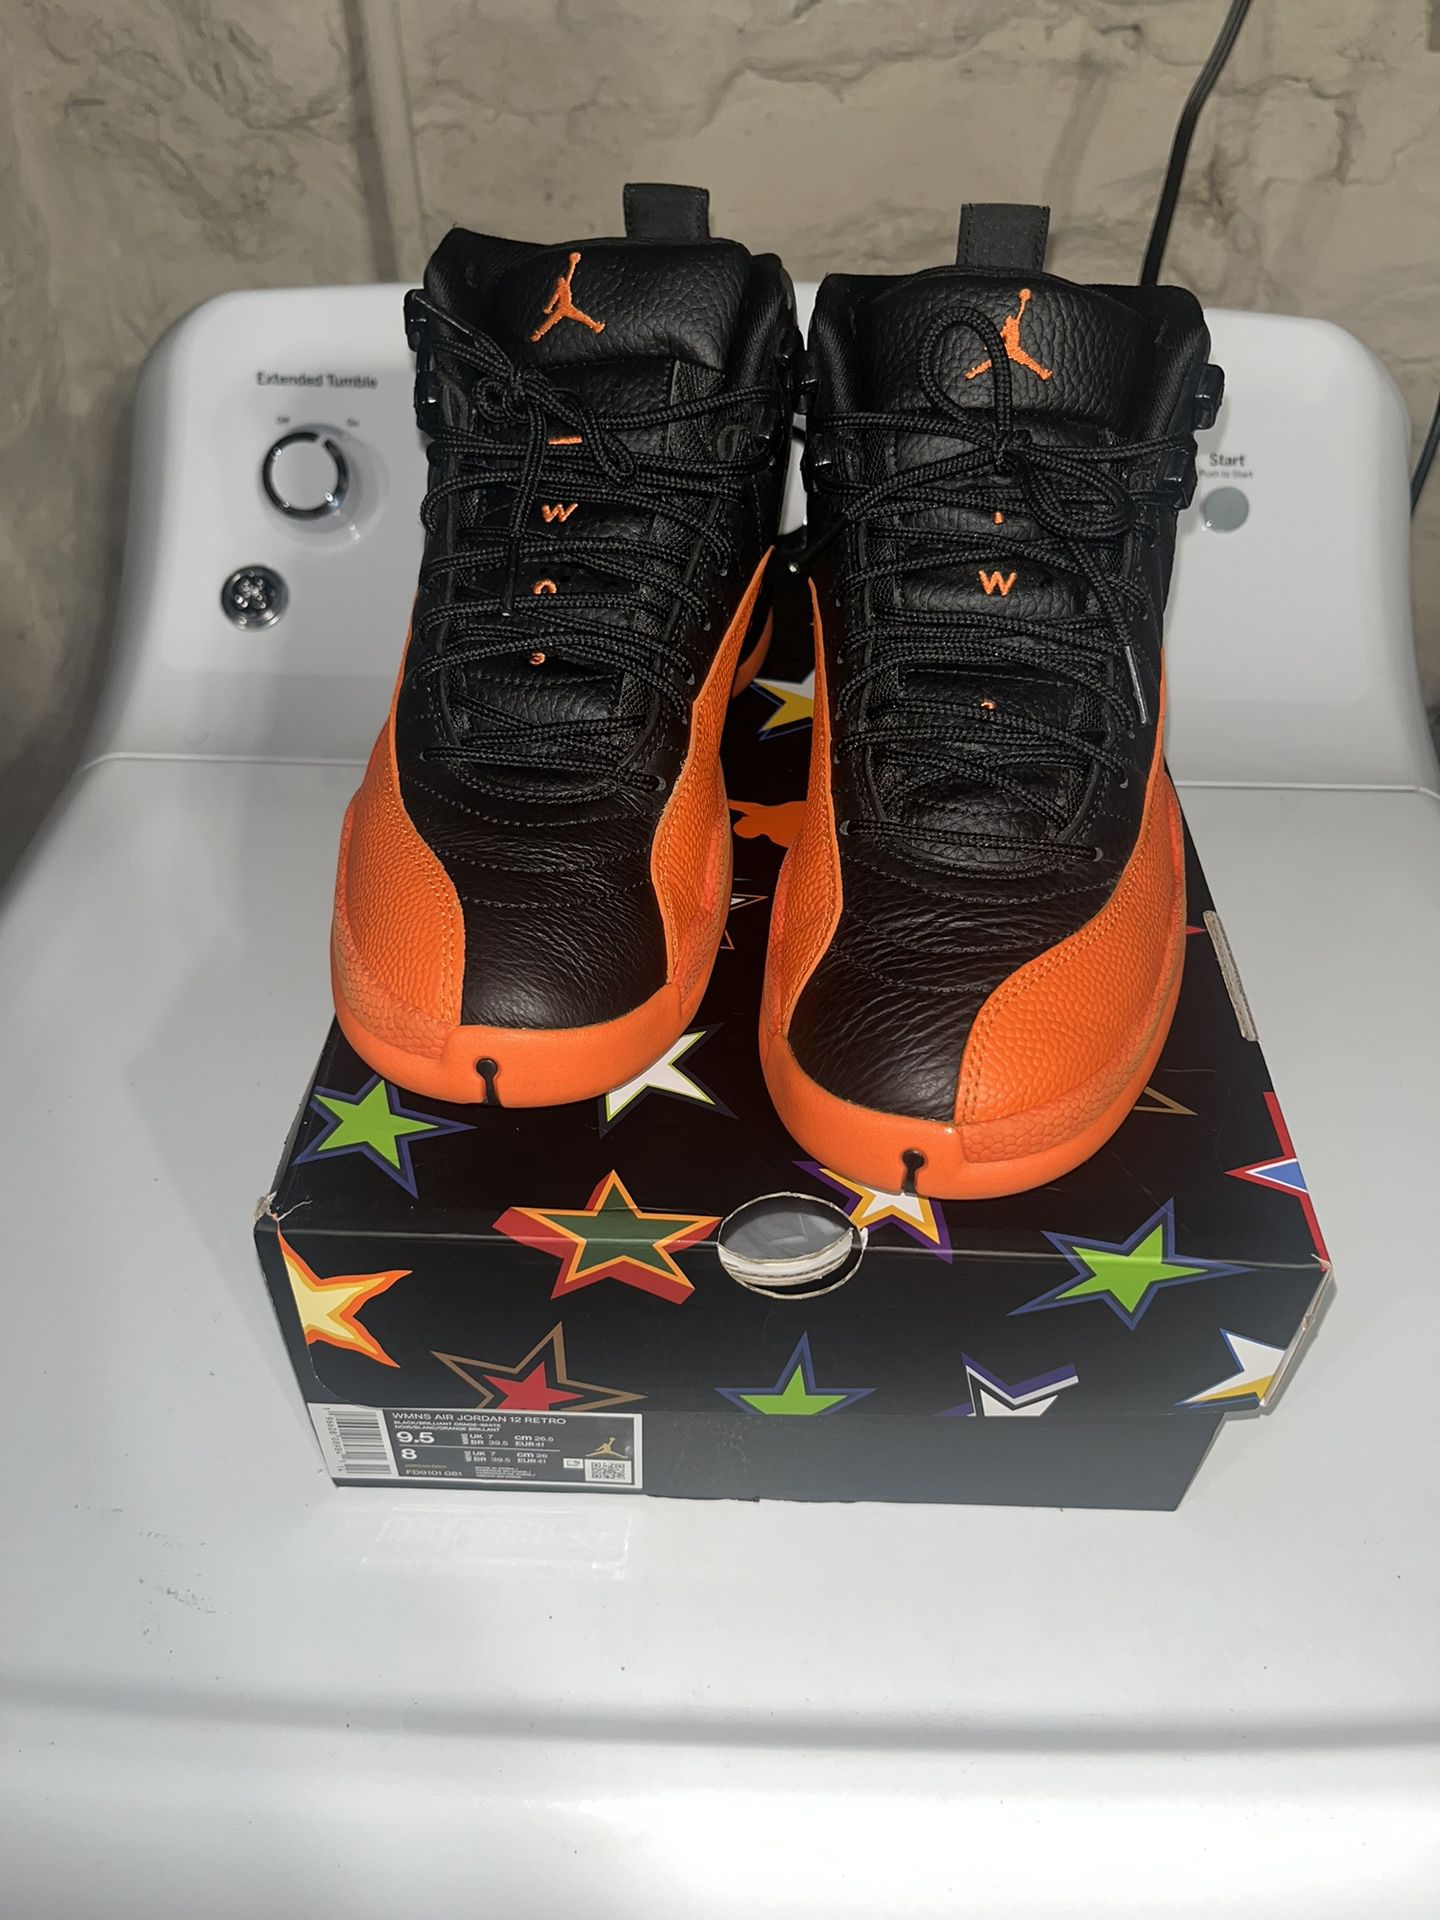 Orange Jordan 12s